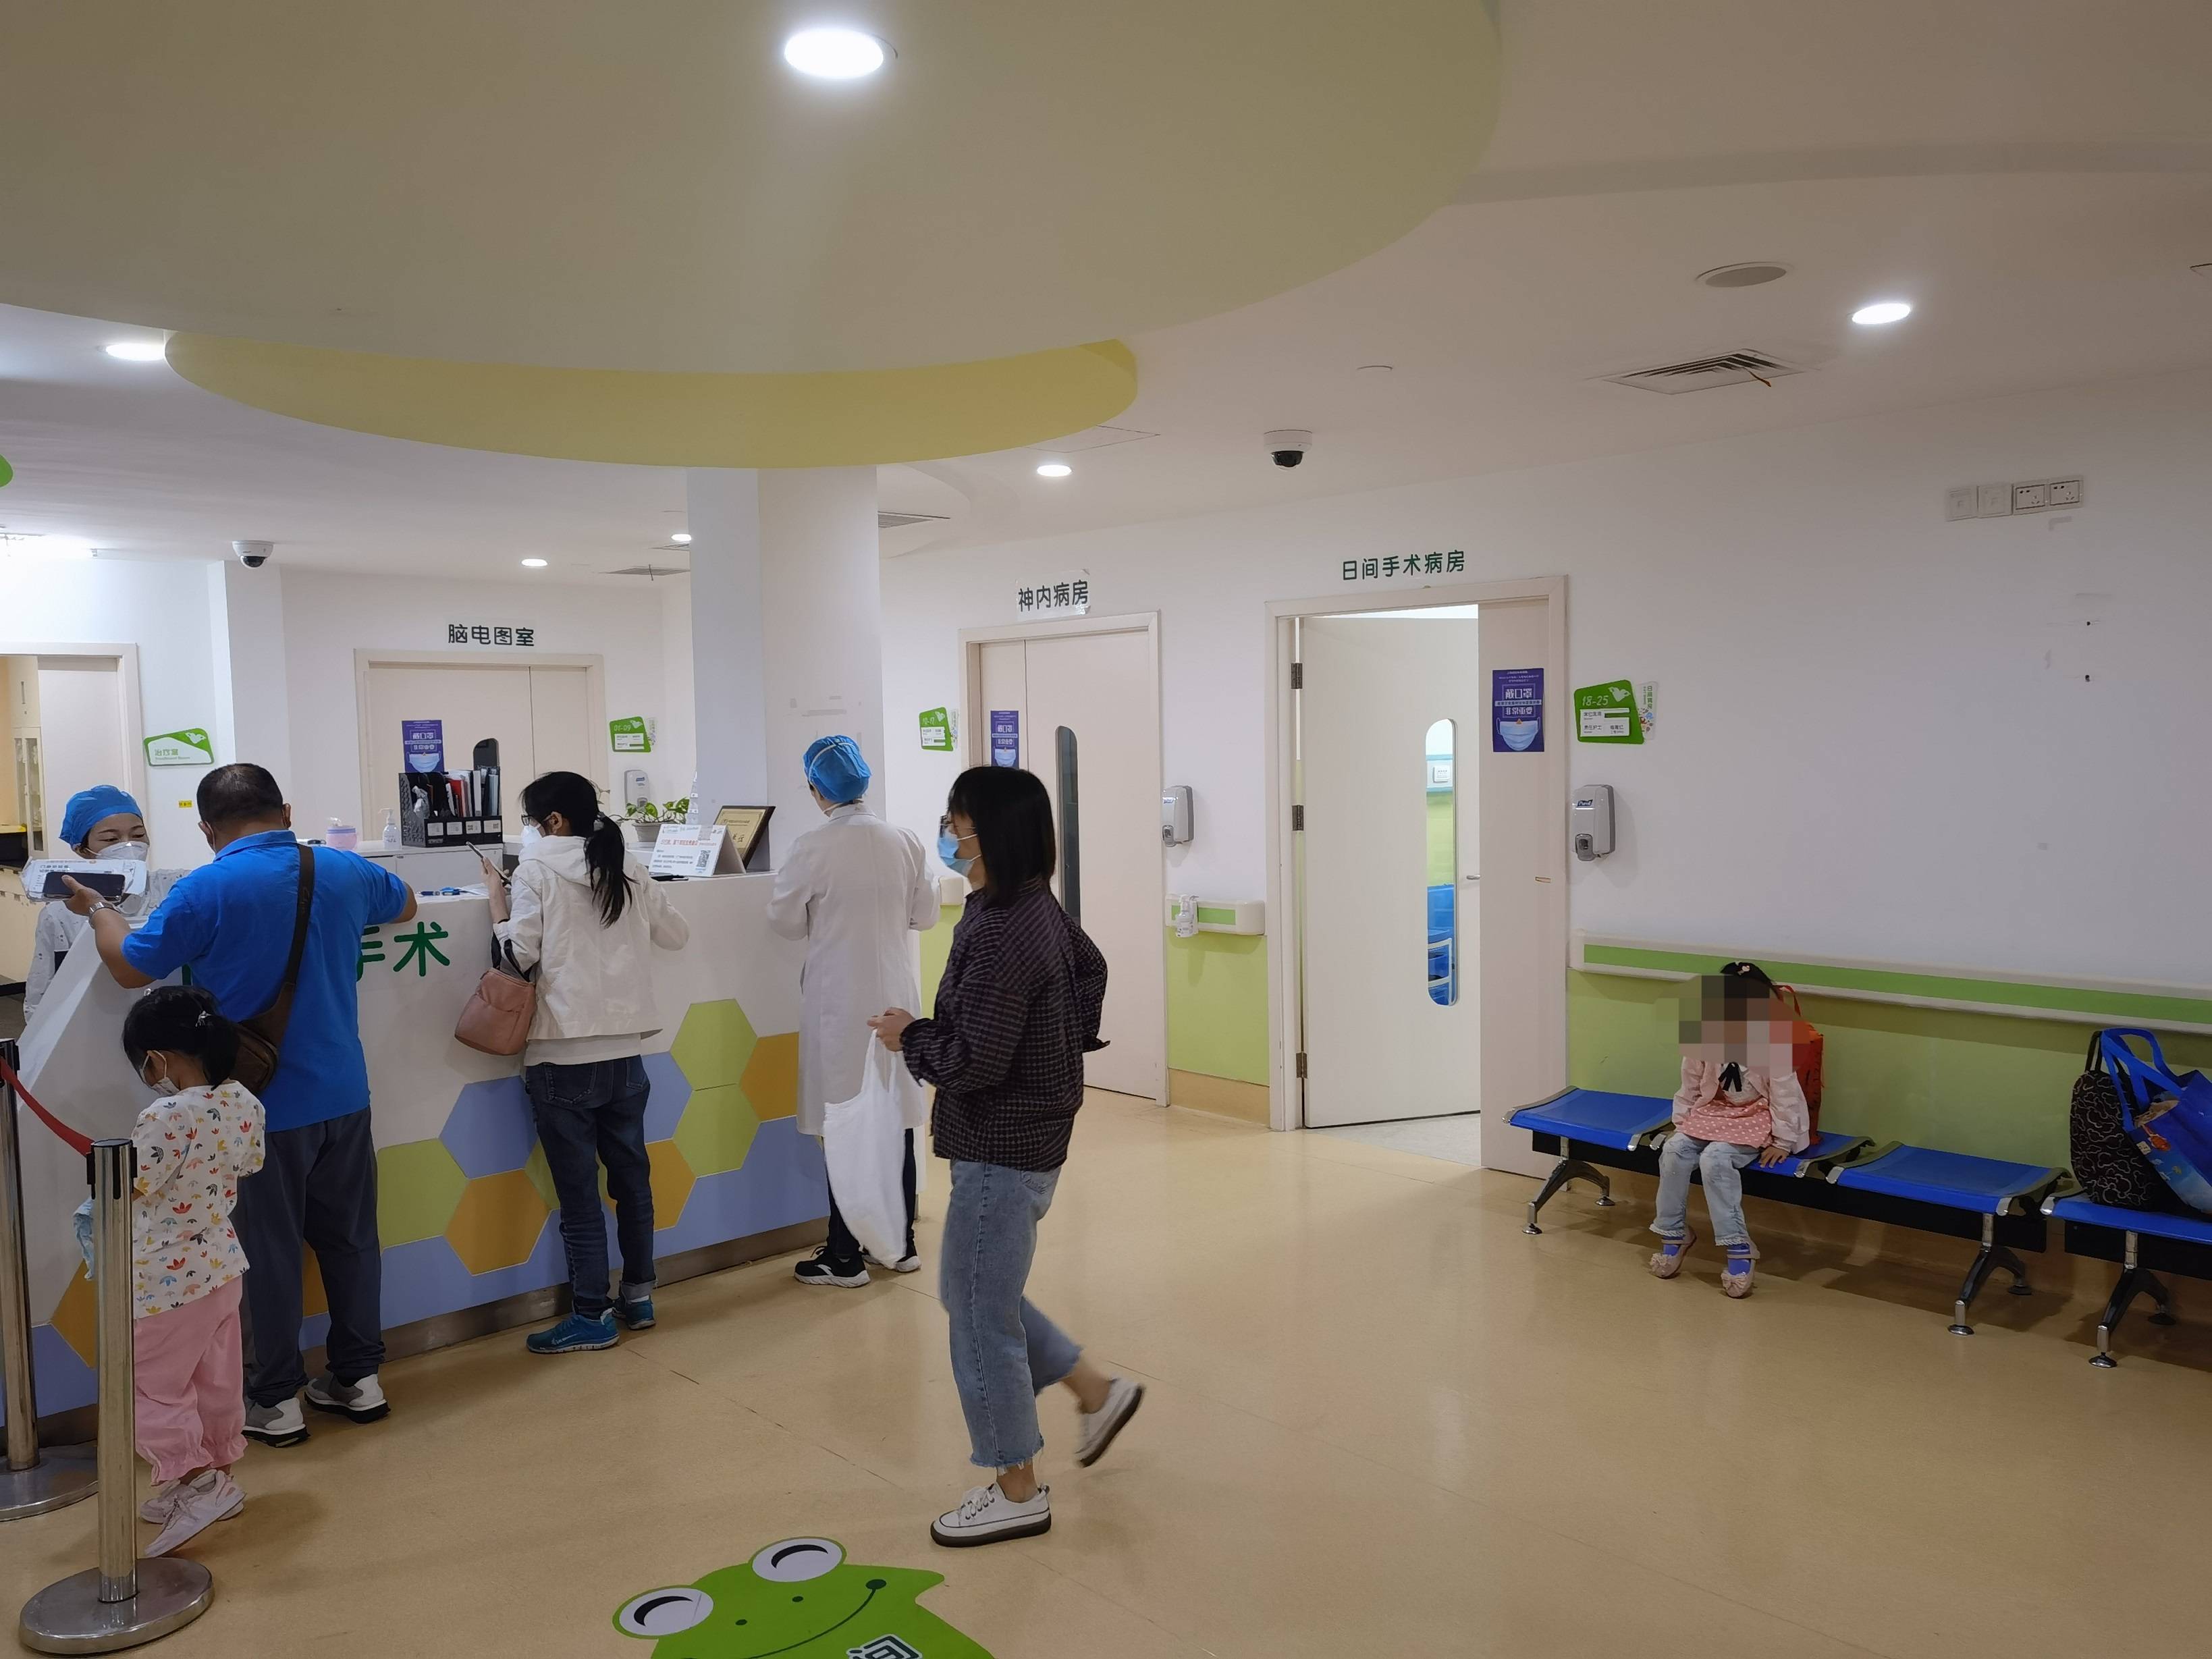 上海市儿童医院北京西路院区日间手术中心正式恢复使用,包括耳鼻喉科